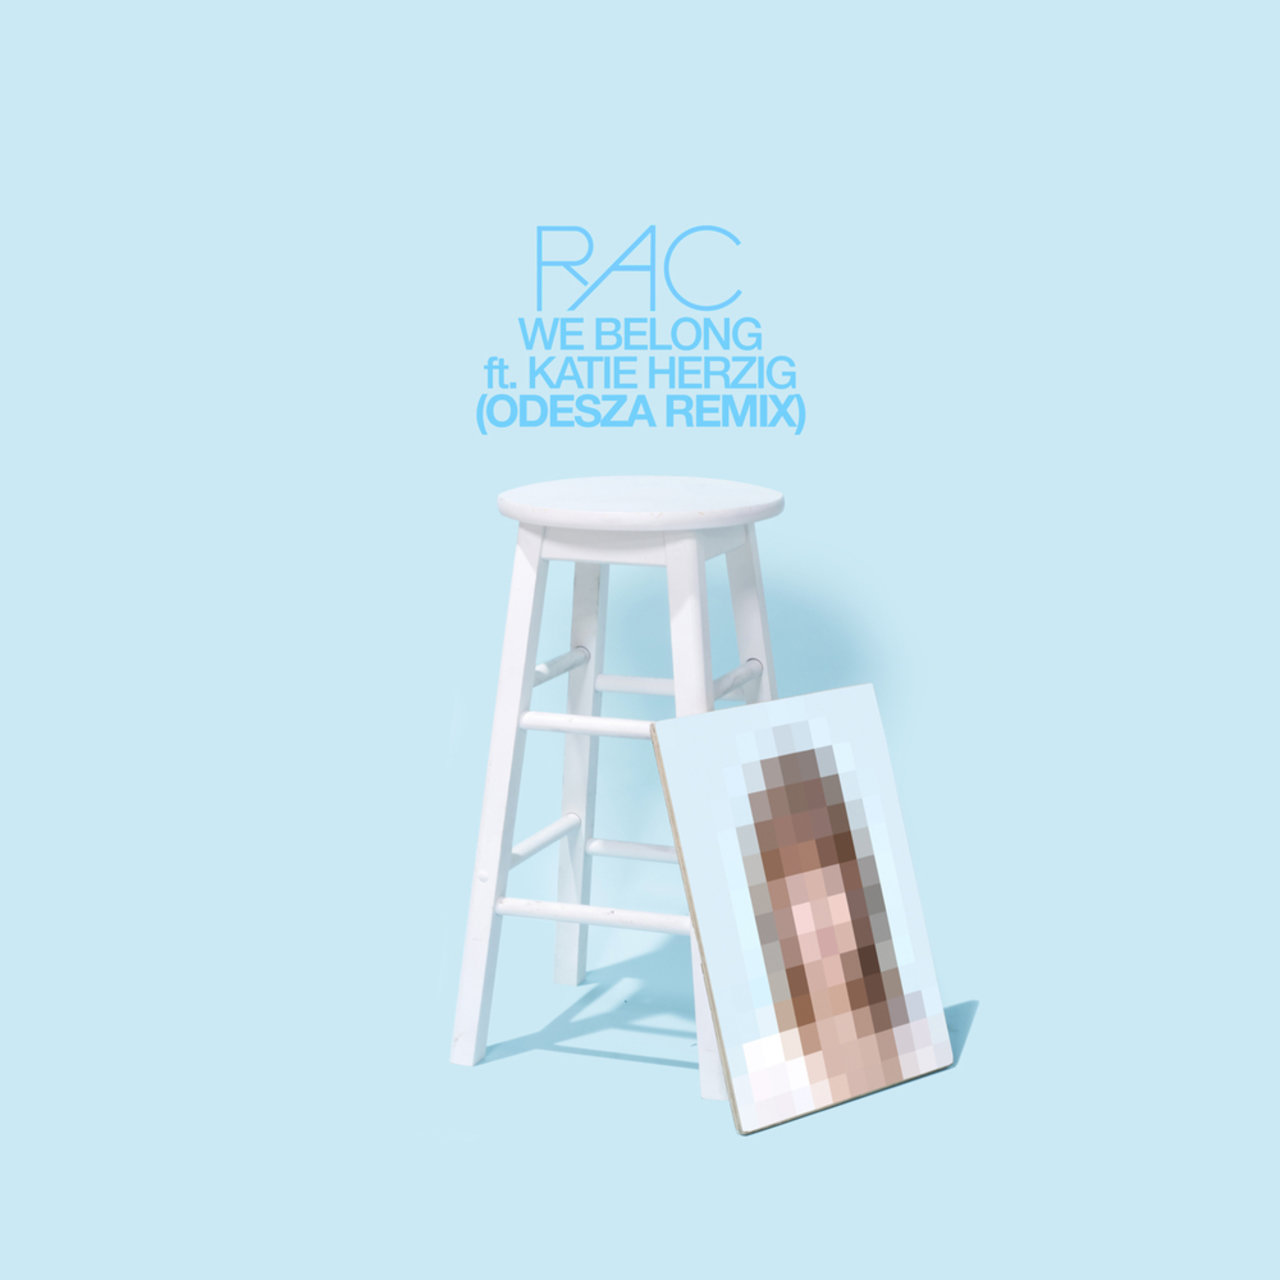 RAC ft. featuring Katie Herzig We Belong (ODESZA Remix) cover artwork